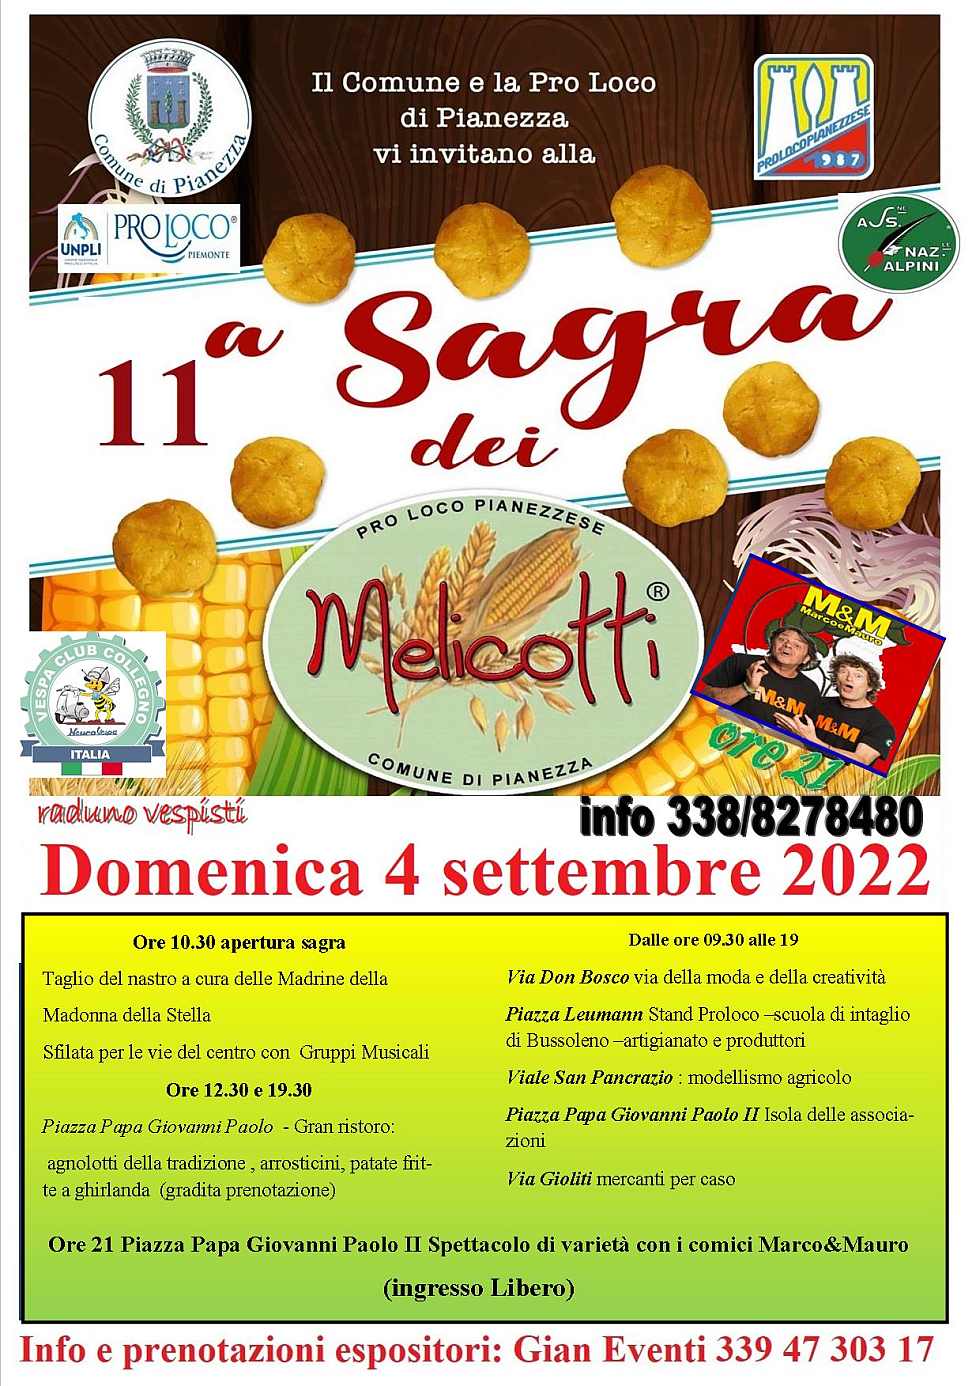 Pianezza (TO)
"11^ Sagra dei Melicotti"
4 Settembre 2022
